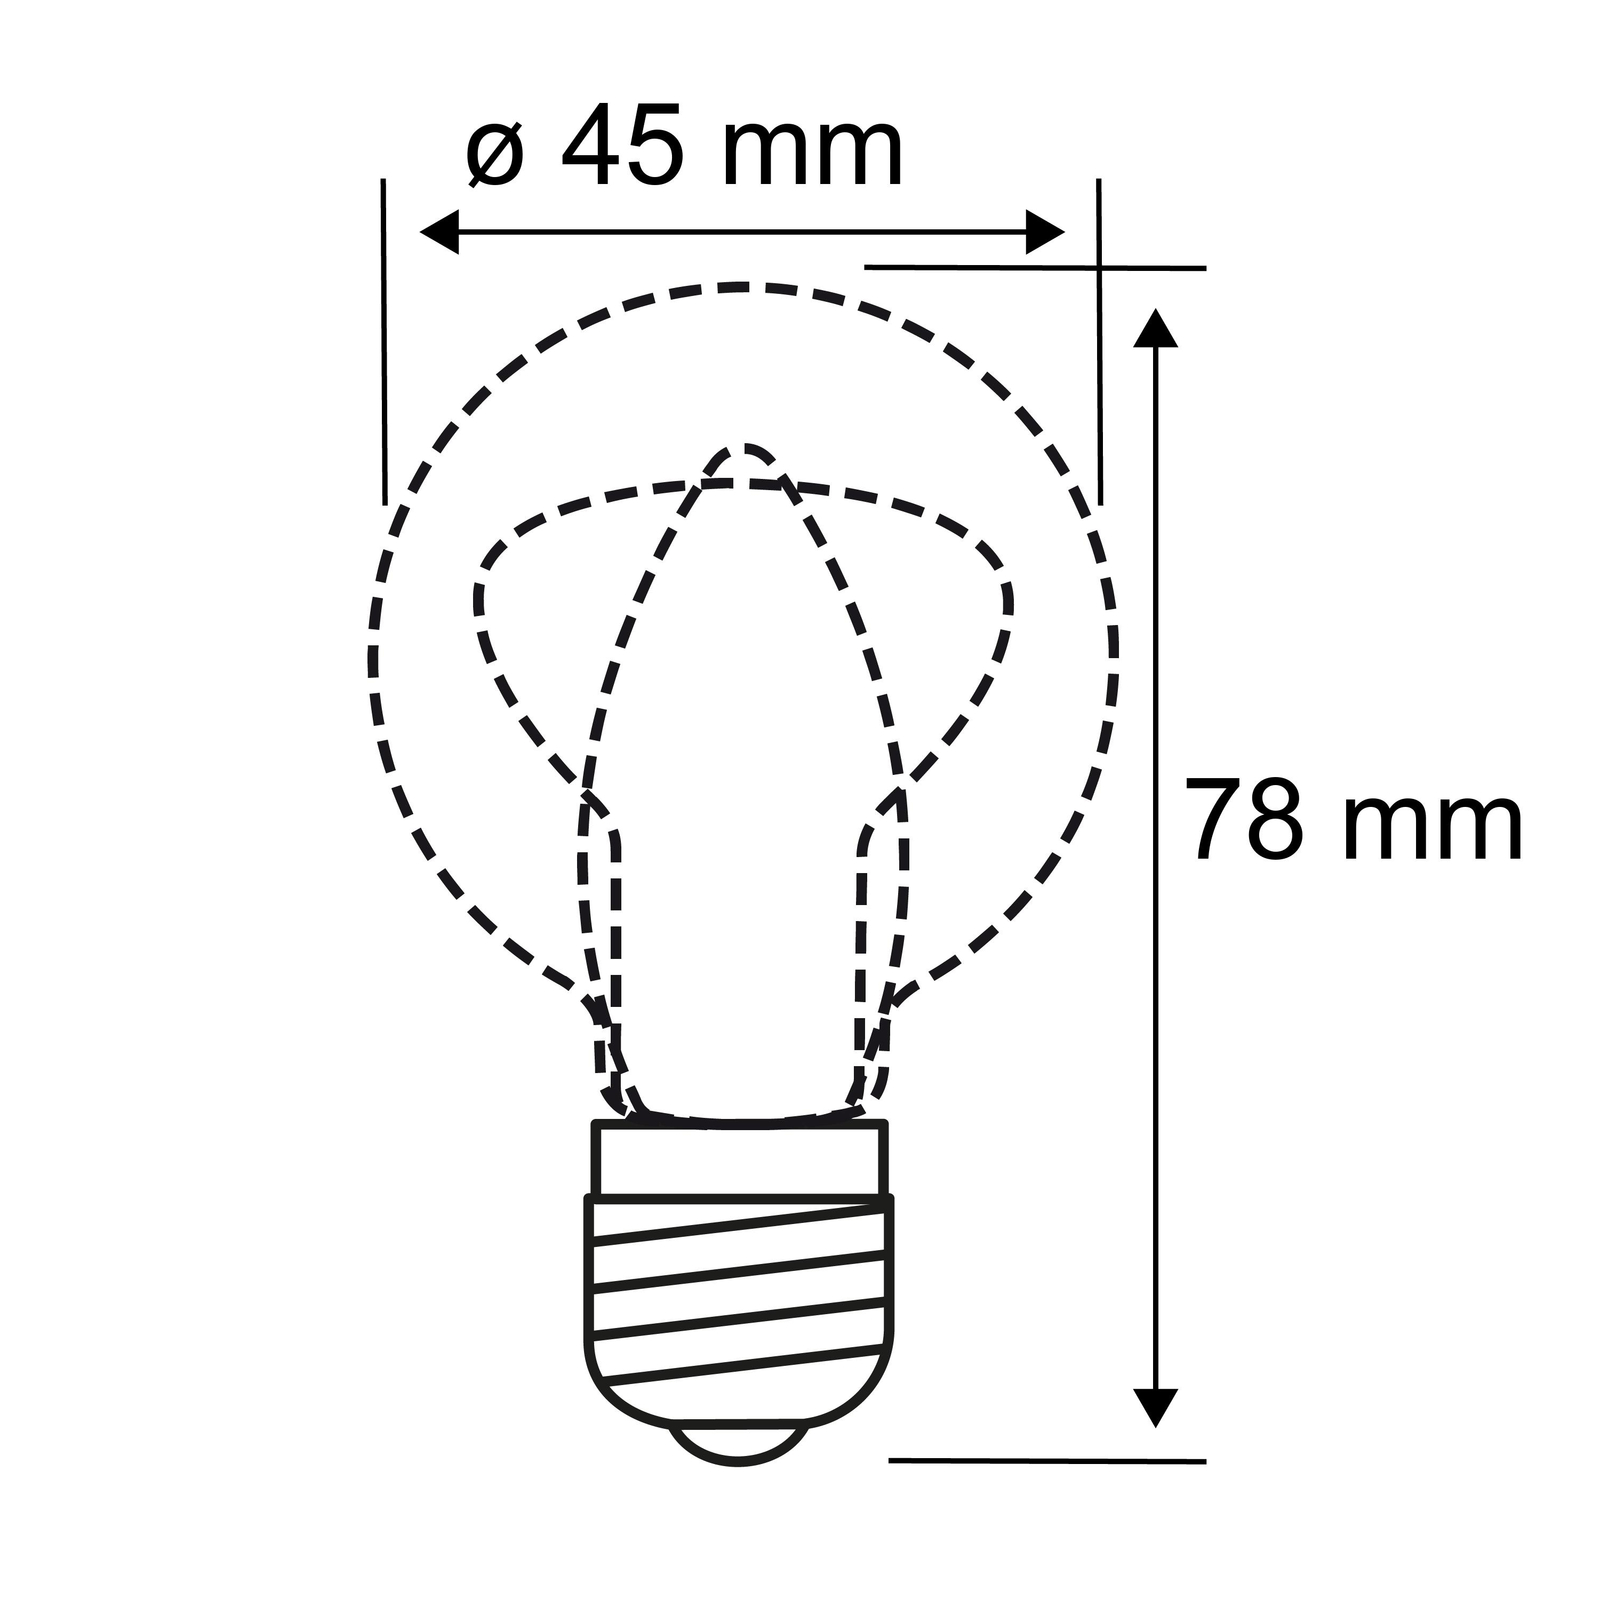 LED-lamppu E14 827 drop hopea 2,6W